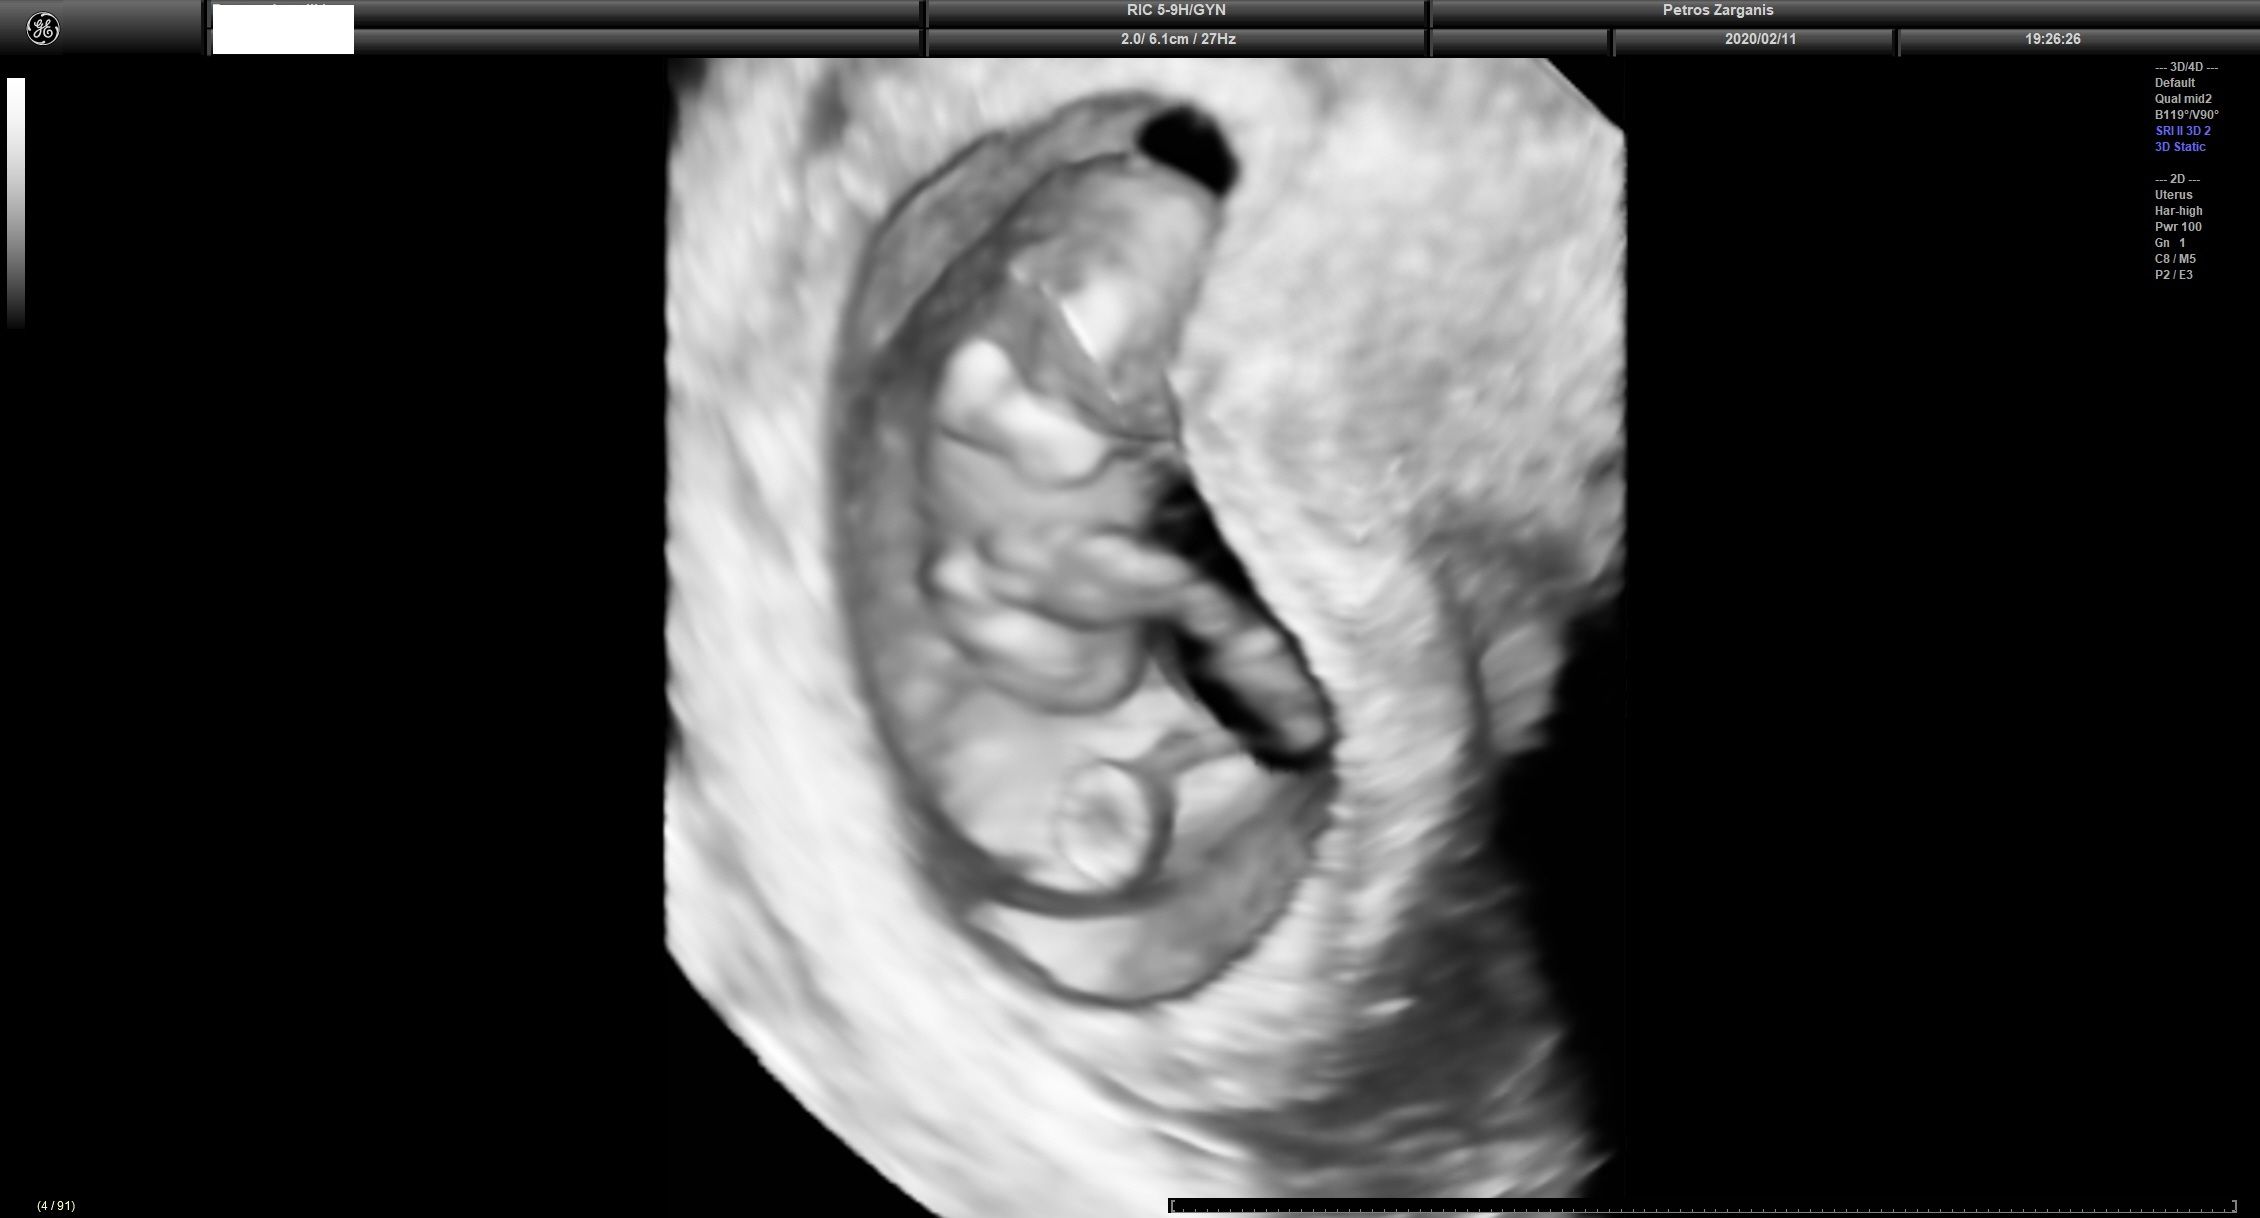 Ίδια εικόνα ώστε να δούμε το έμβρυο και το λεκιθικό ασκό .